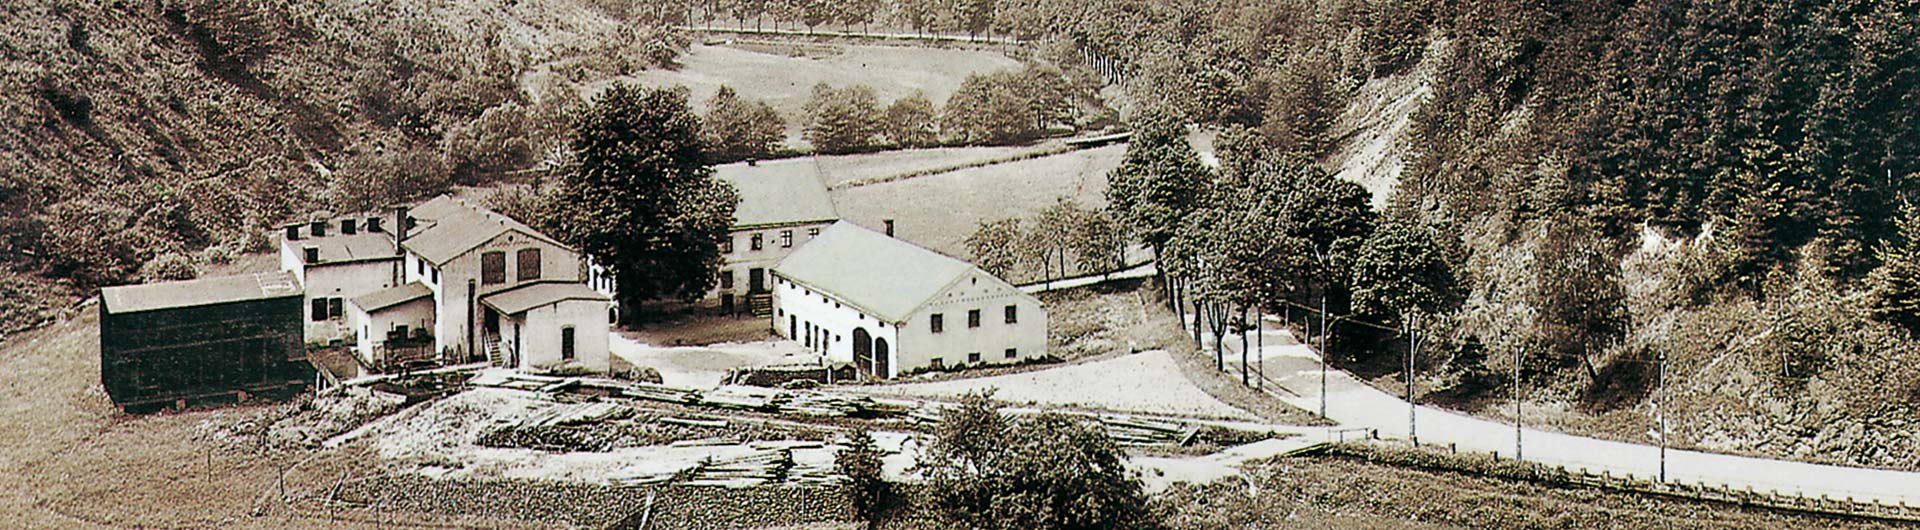 Mittelndorfer Mühle - historische Aufnahme um 1880